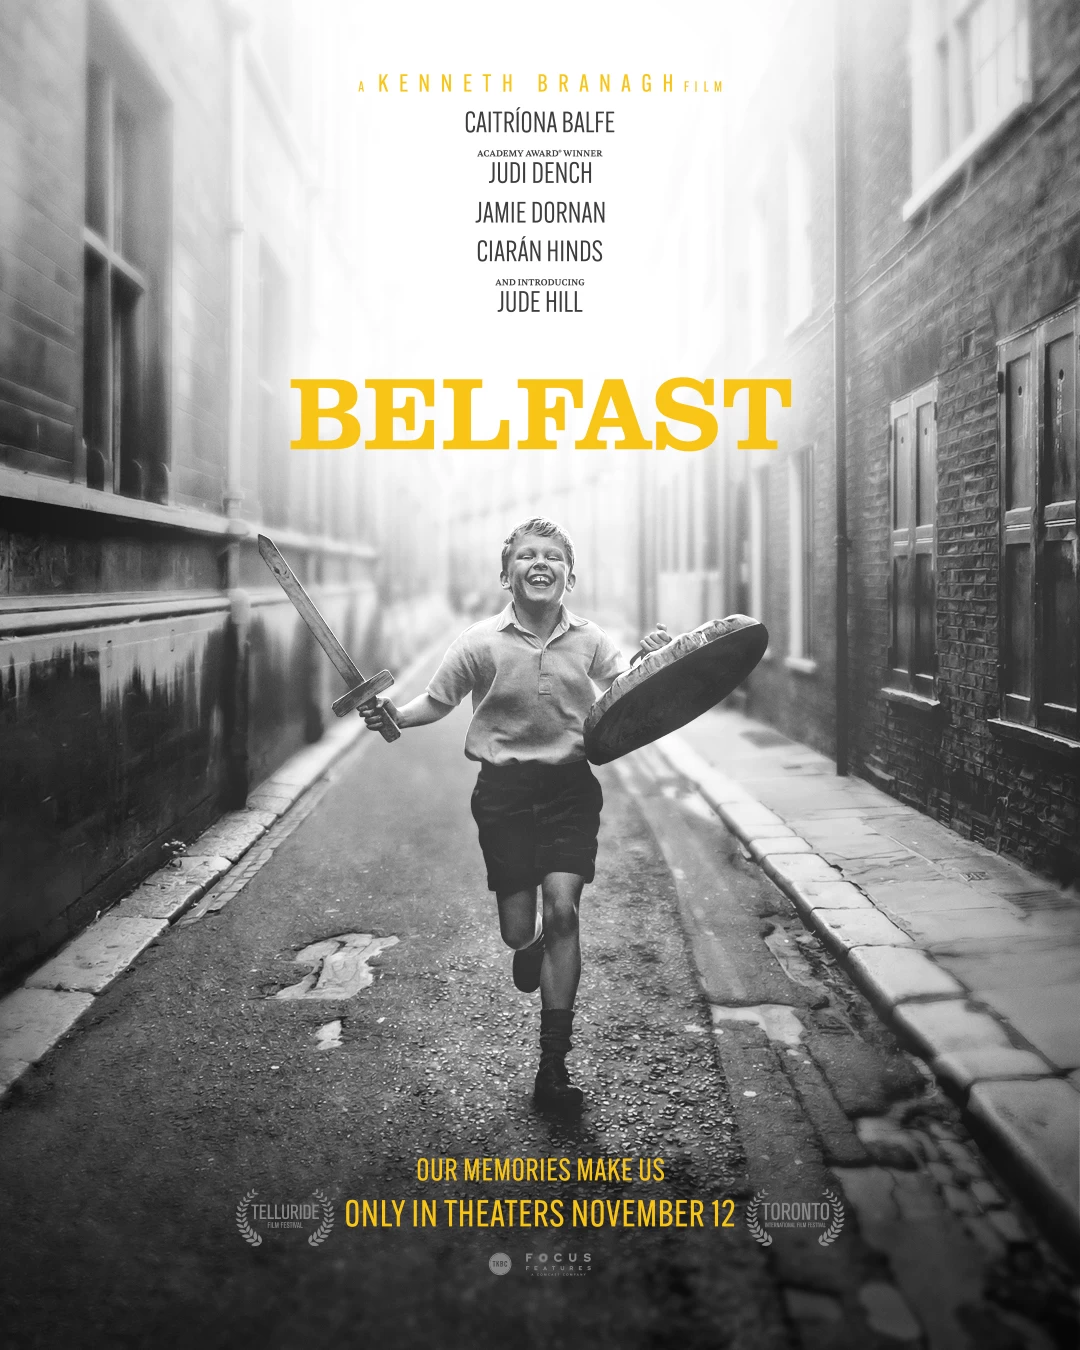 贝尔法斯特 蓝光原盘下载+高清MKV版/Belfaste 2021 Belfast 36.7G